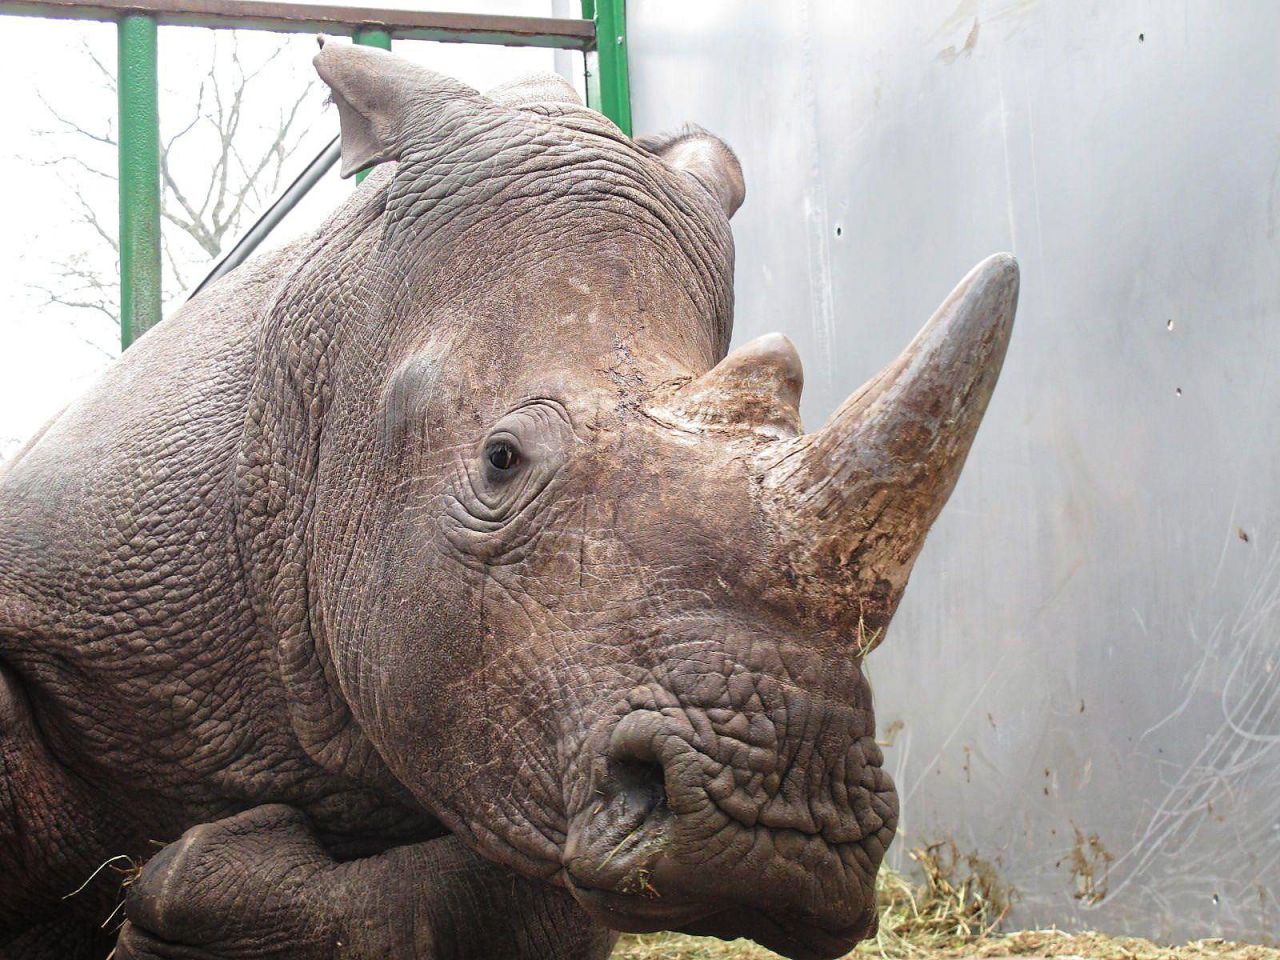 Braconnage à Thoiry : Vince, un rhinocéros blanc tué pour sa corne